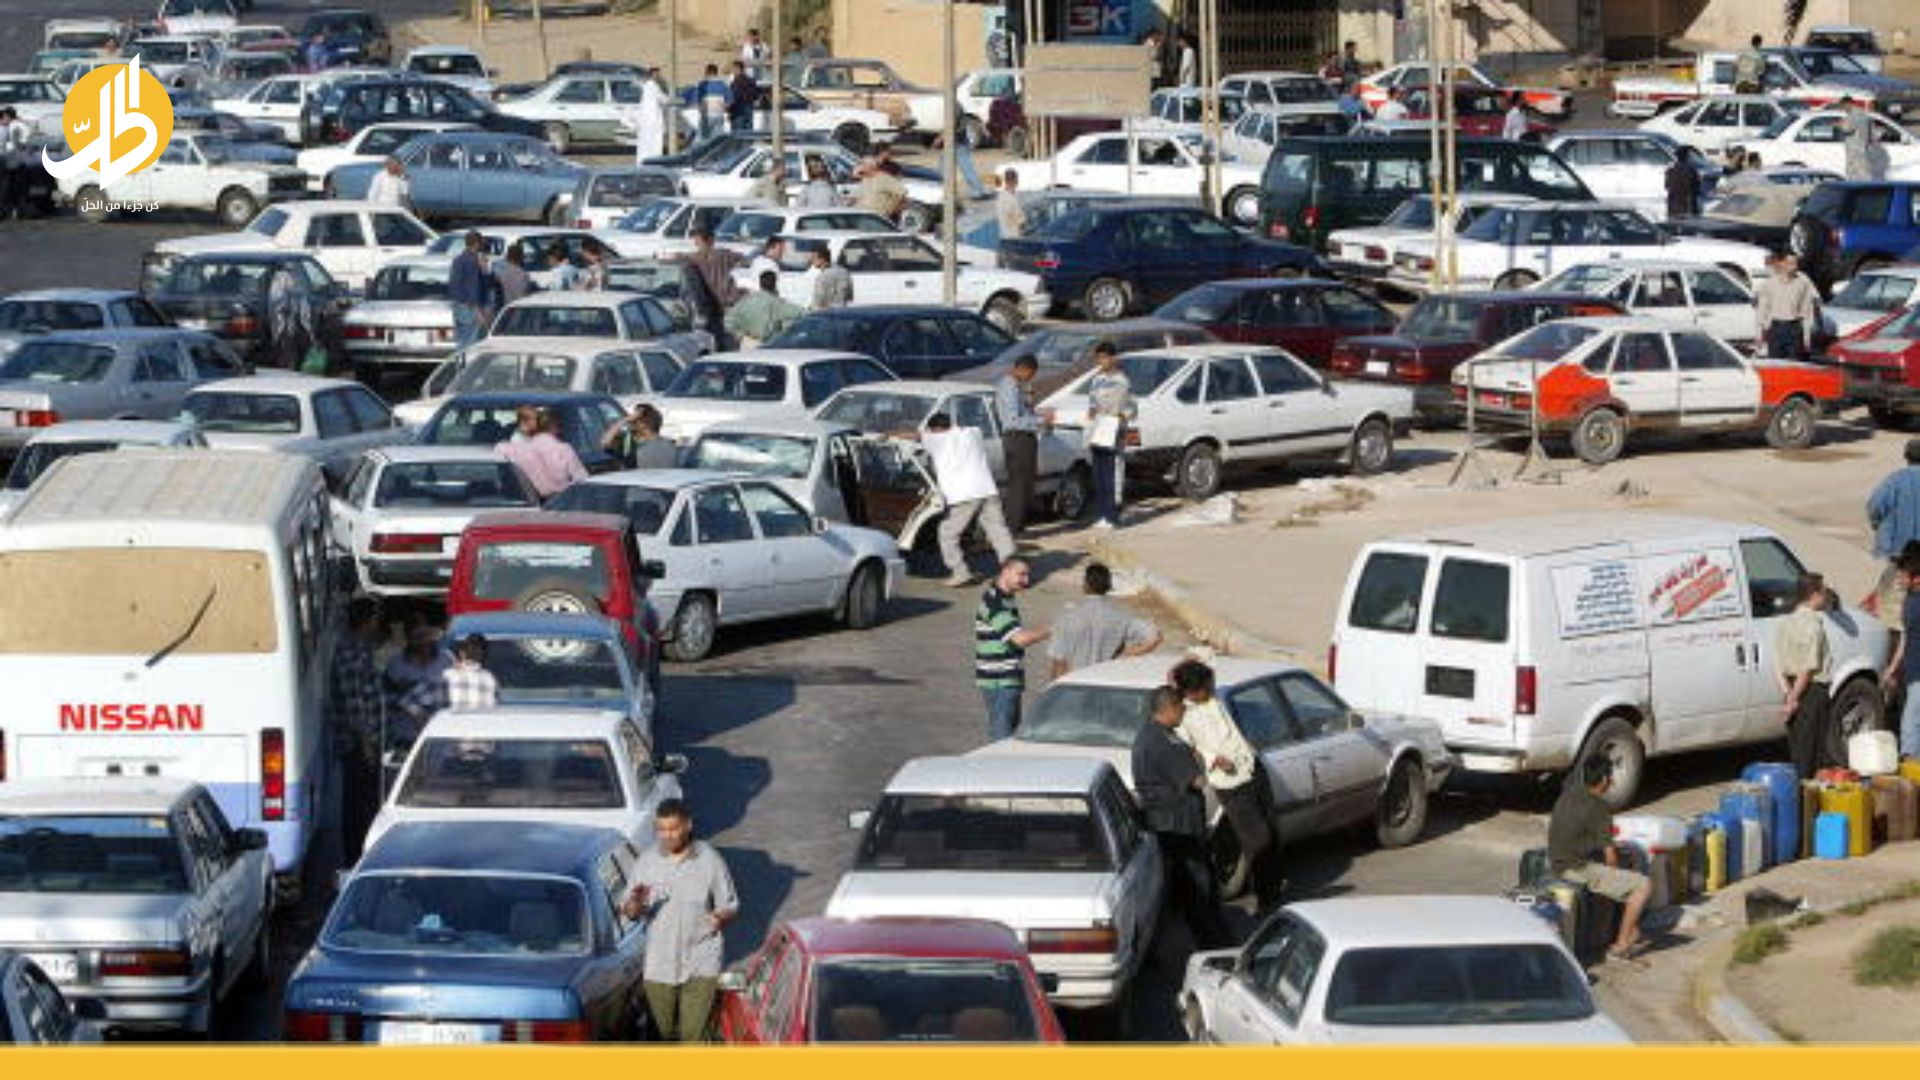 العراق يبحث إيقاف استيراد السيارات.. هل ستنتهي الاختناقات المرورية؟